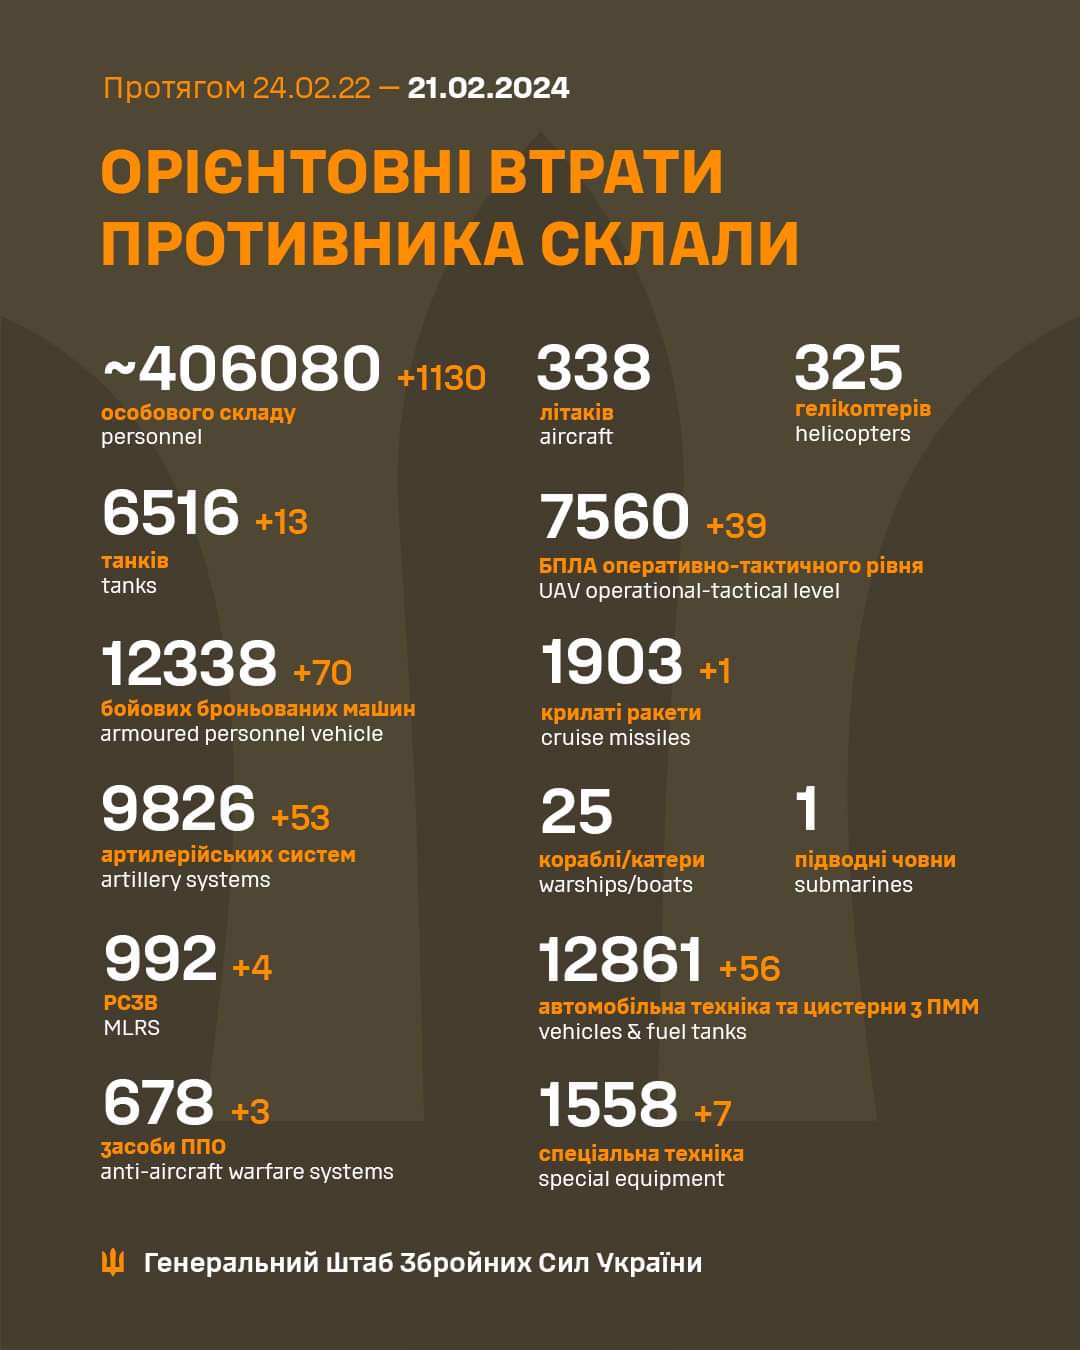 Потери армии РФ на 21.02.2024